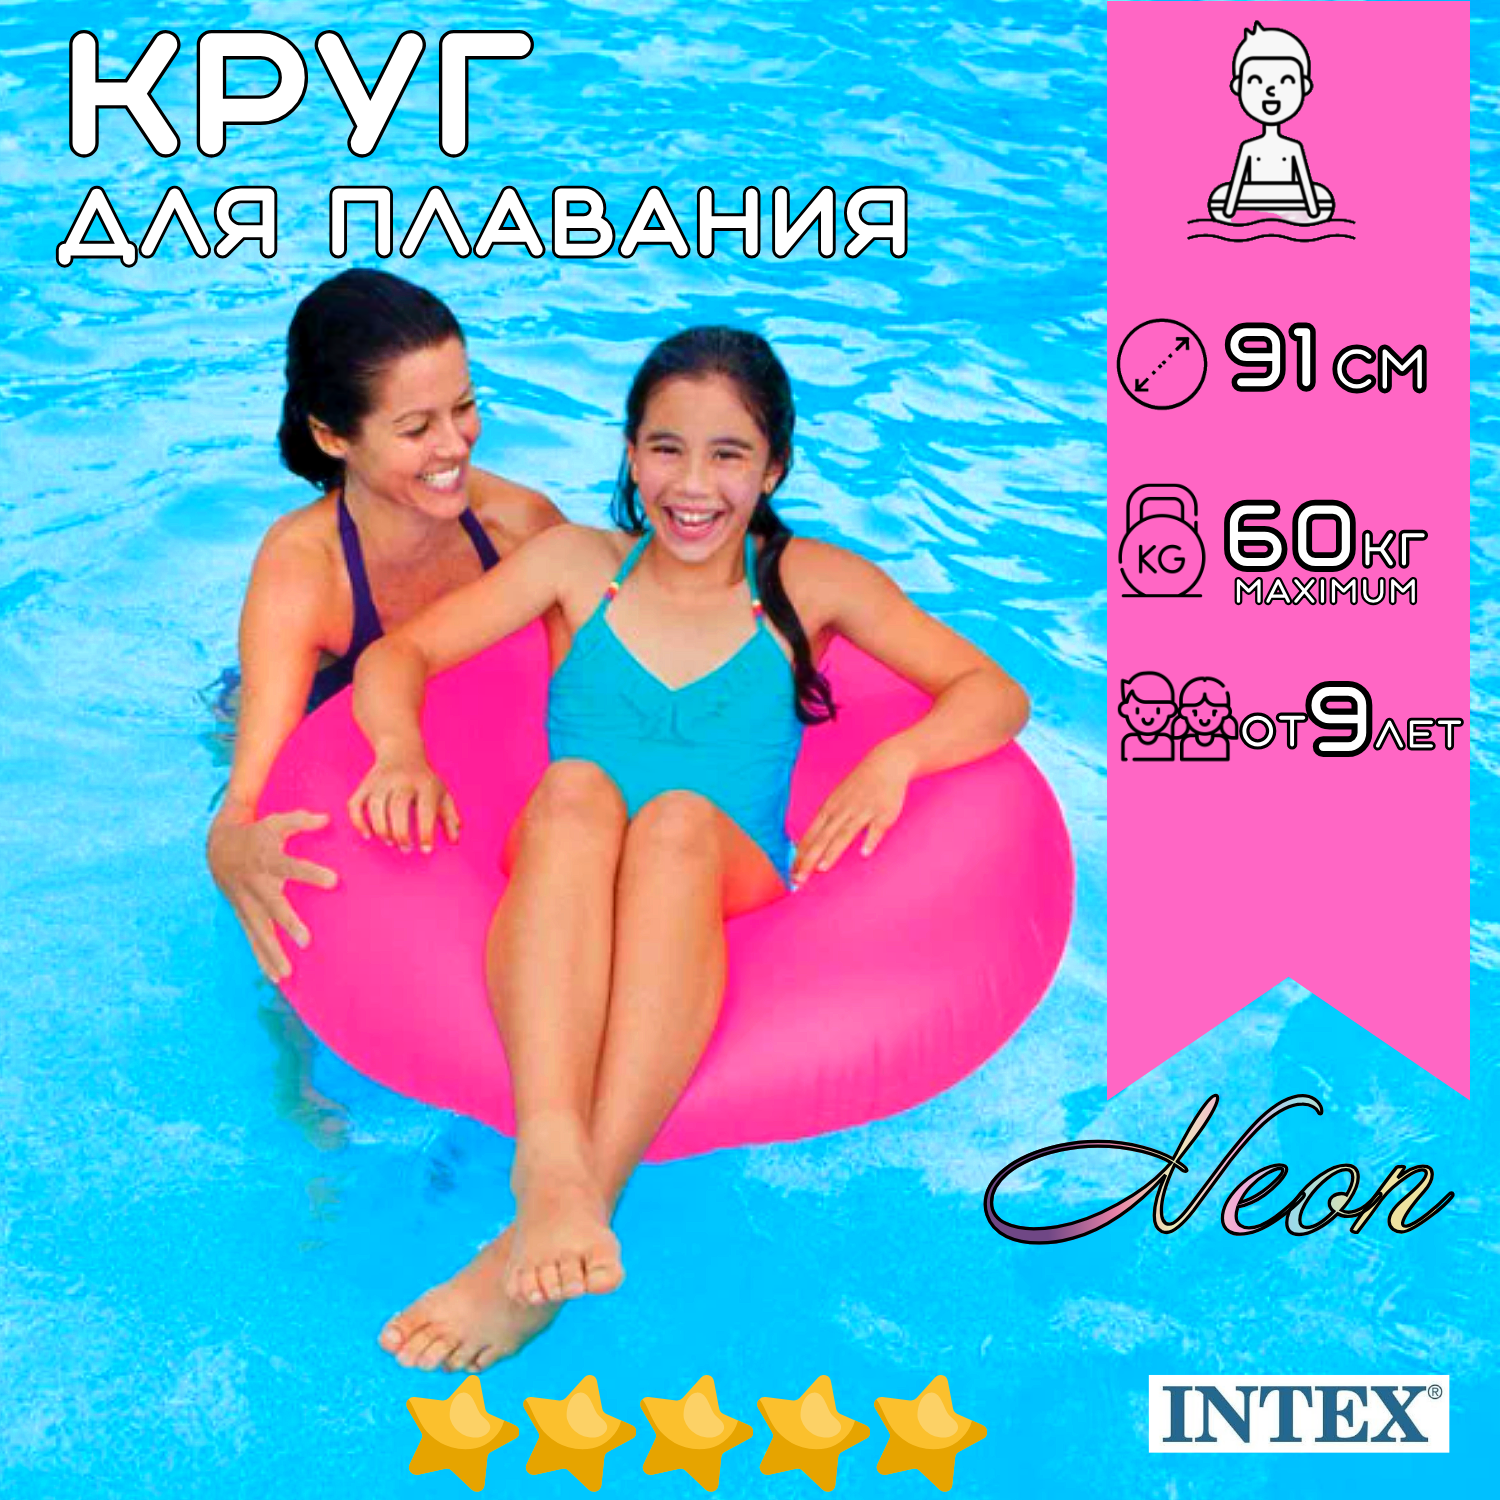 Надувной круг для плавания INTEX Neon 91 см, для взрослых и детей от 9 лет на пляж и в бассейн, нагрузка до 60 кг, плотный неон, без насоса, непрозрачные, цвет микс / 1 шт